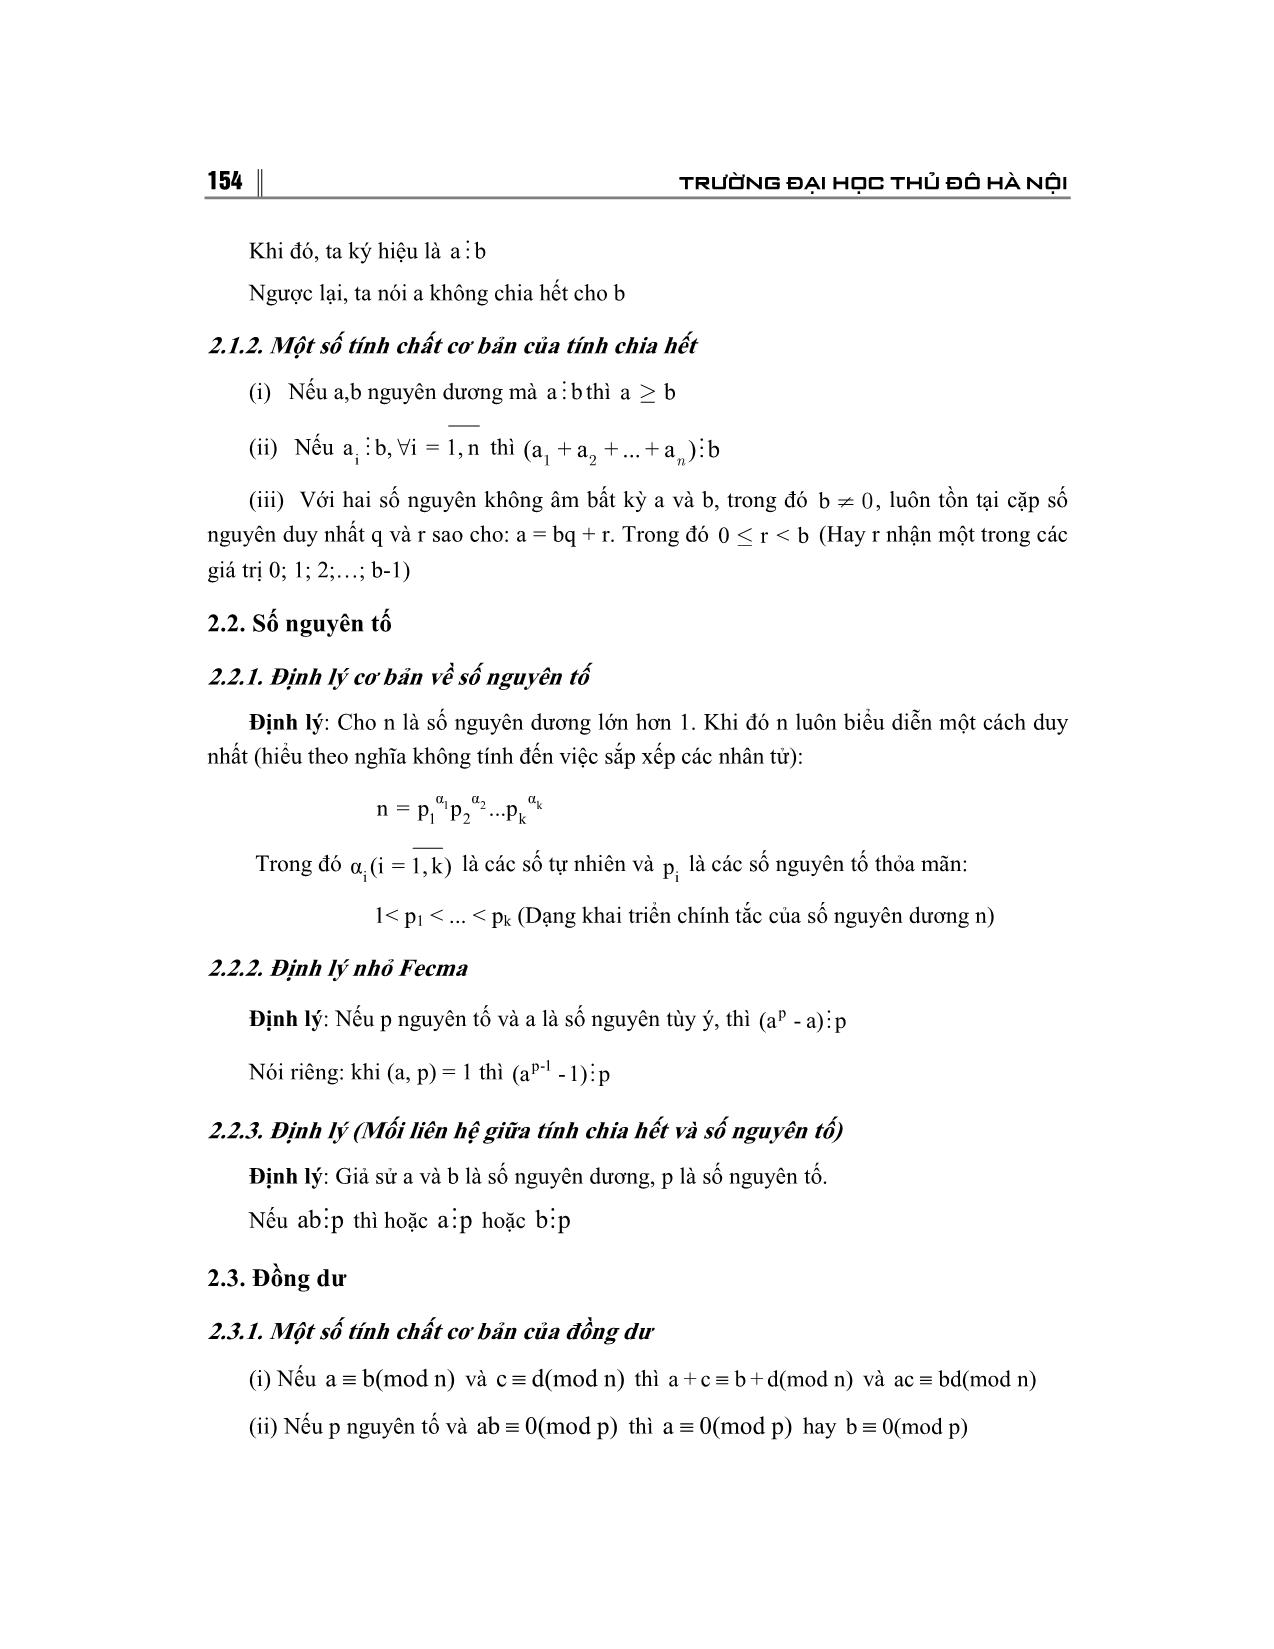 Sử dụng tính nguyên tố để giải bài toán cực trị trên tập đối số nguyên trang 2